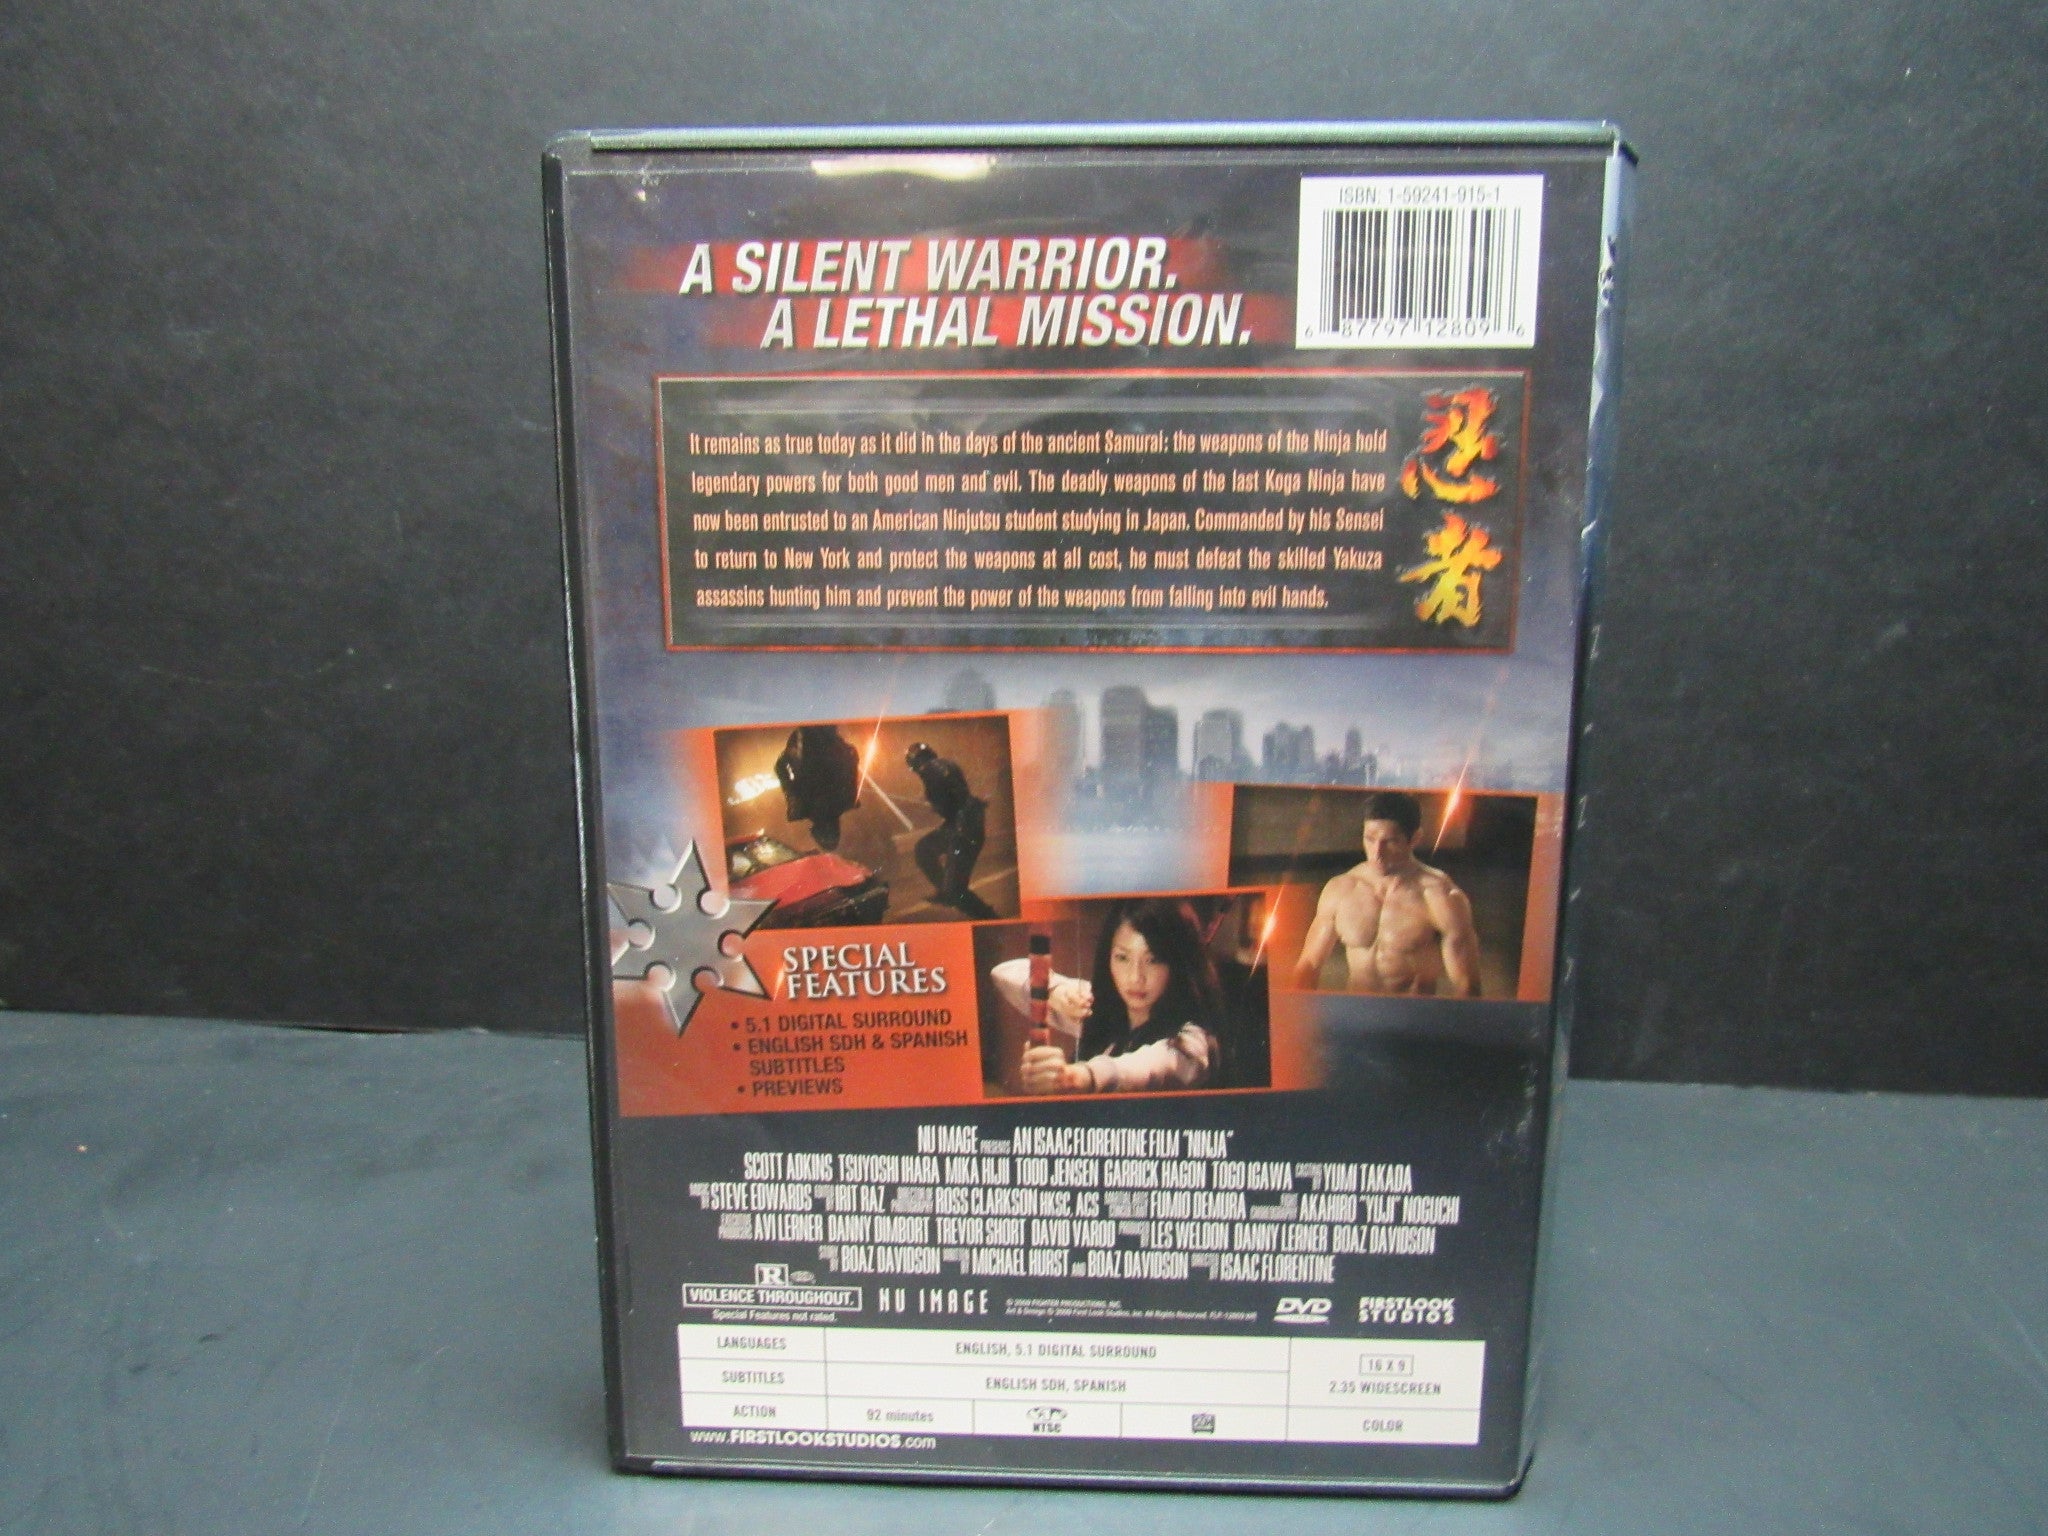 Ninja Assassin DVD (2009) - DVD - LastDodo